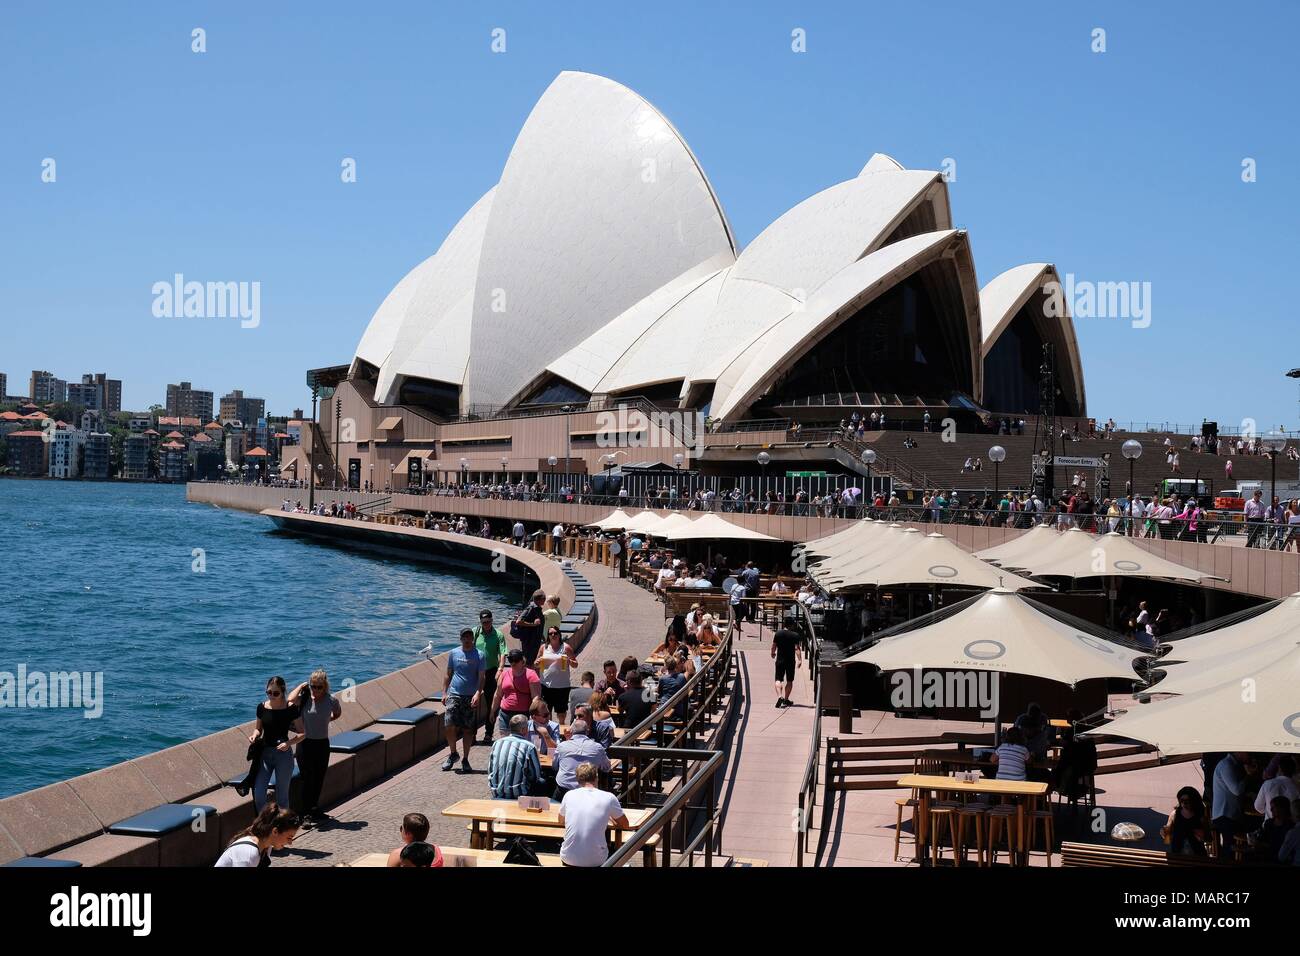 Opernhaus in Sydney - Australien - Sydney Opera House ist ein multi-Veranstaltungsort Zentrum für darstellende Kunst in Sydney, New South Wales, Australien. Es ist eine der Berühmtesten und markante Gebäude des 20. Jahrhunderts. Vom dänischen Architekten Jörg_rn Utzon in 195 | Verwendung weltweit Stockfoto